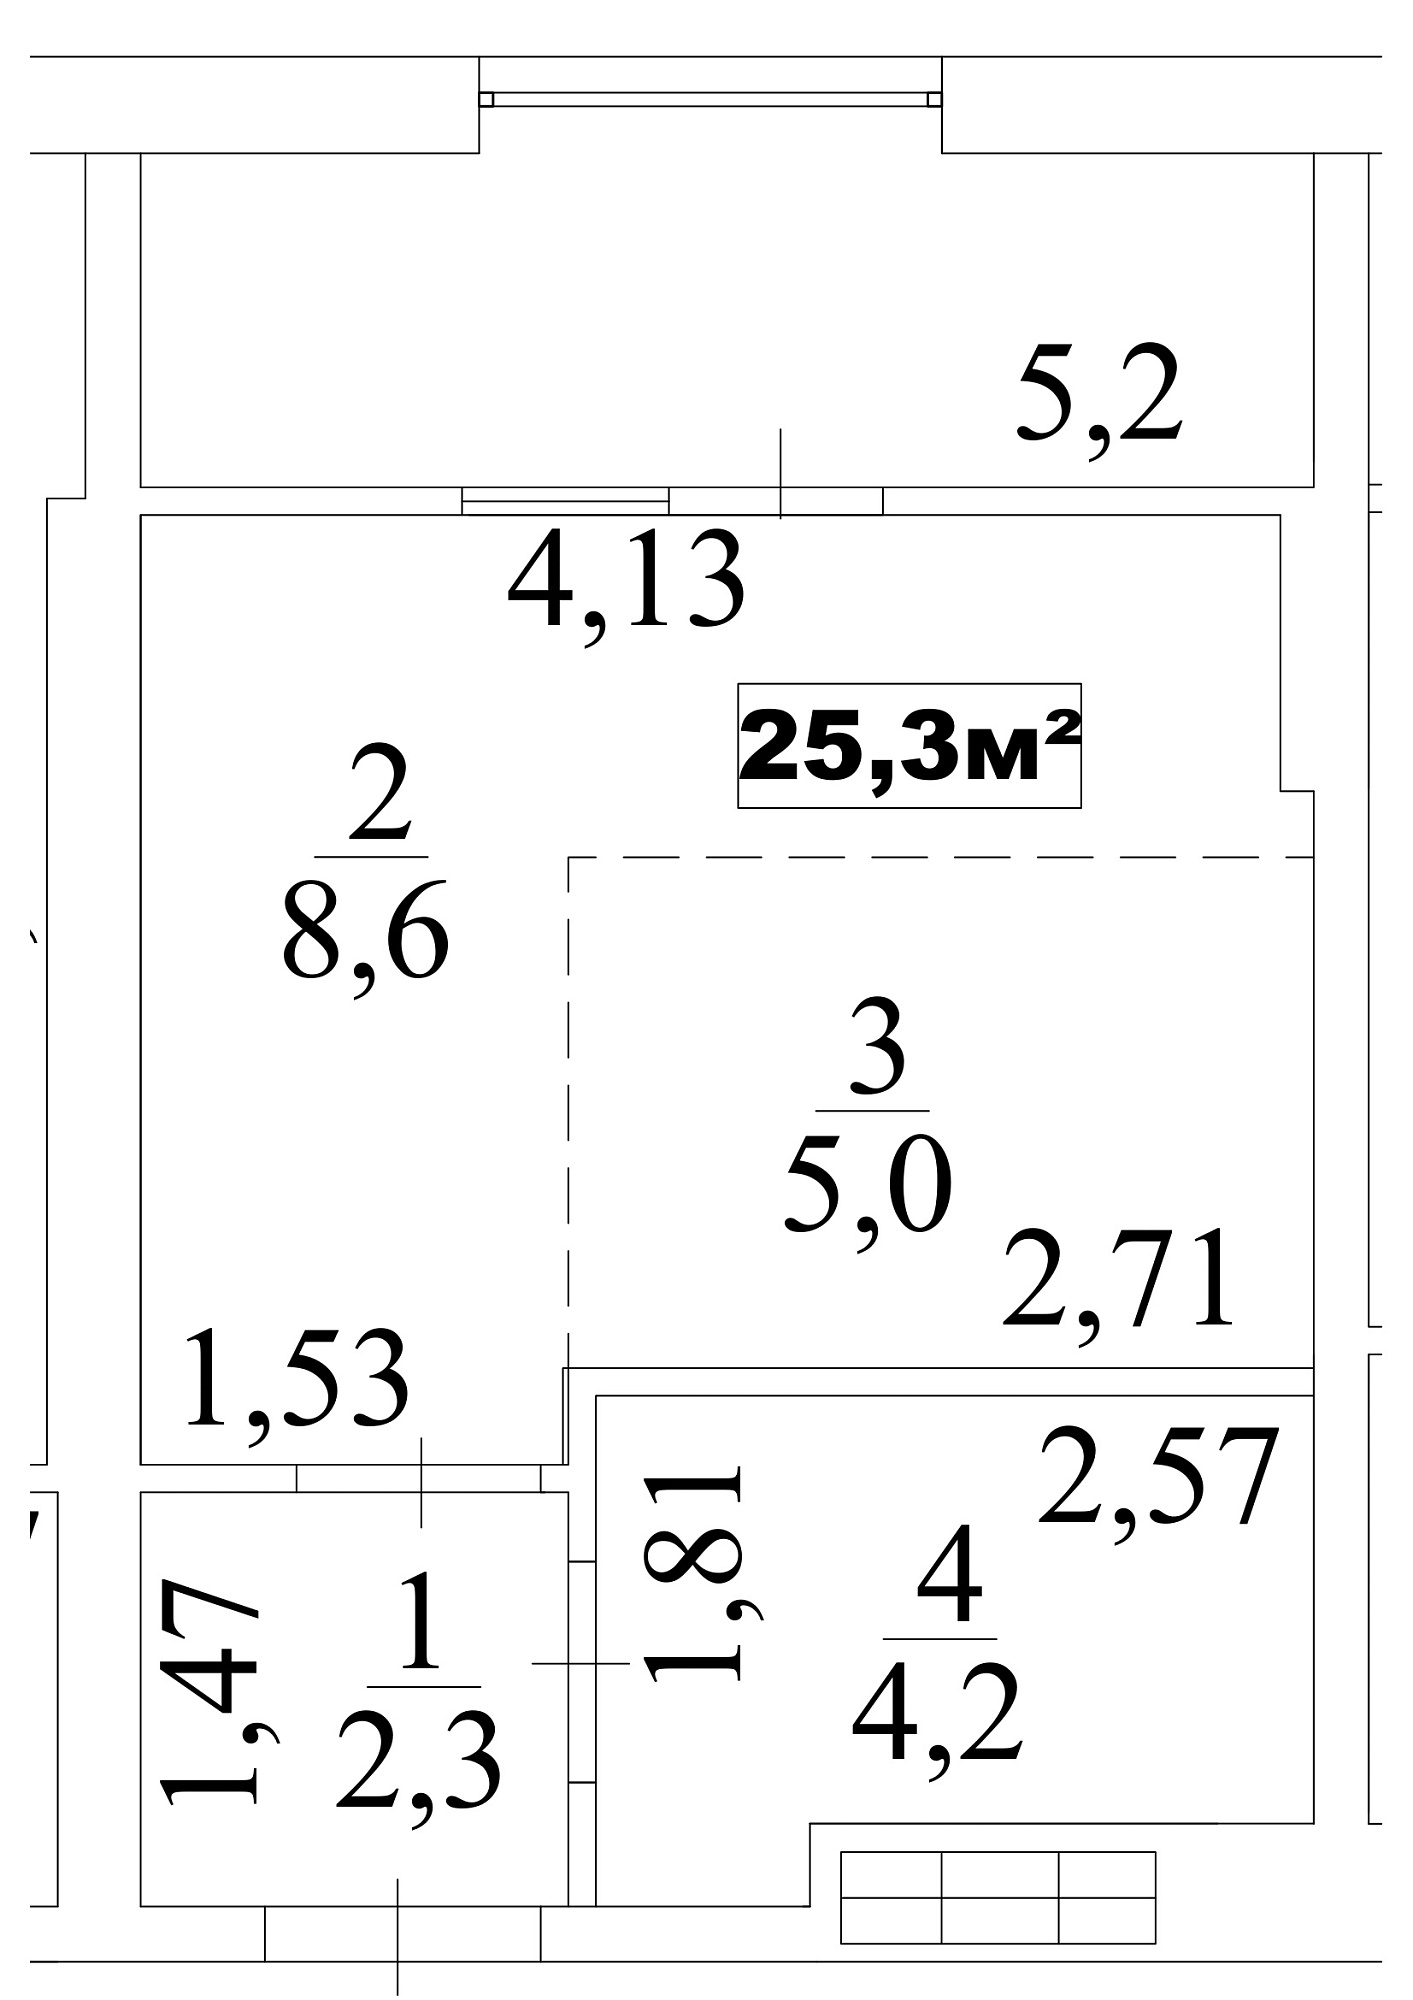 Планування Smart-квартира площею 25.3м2, AB-10-03/0021в.